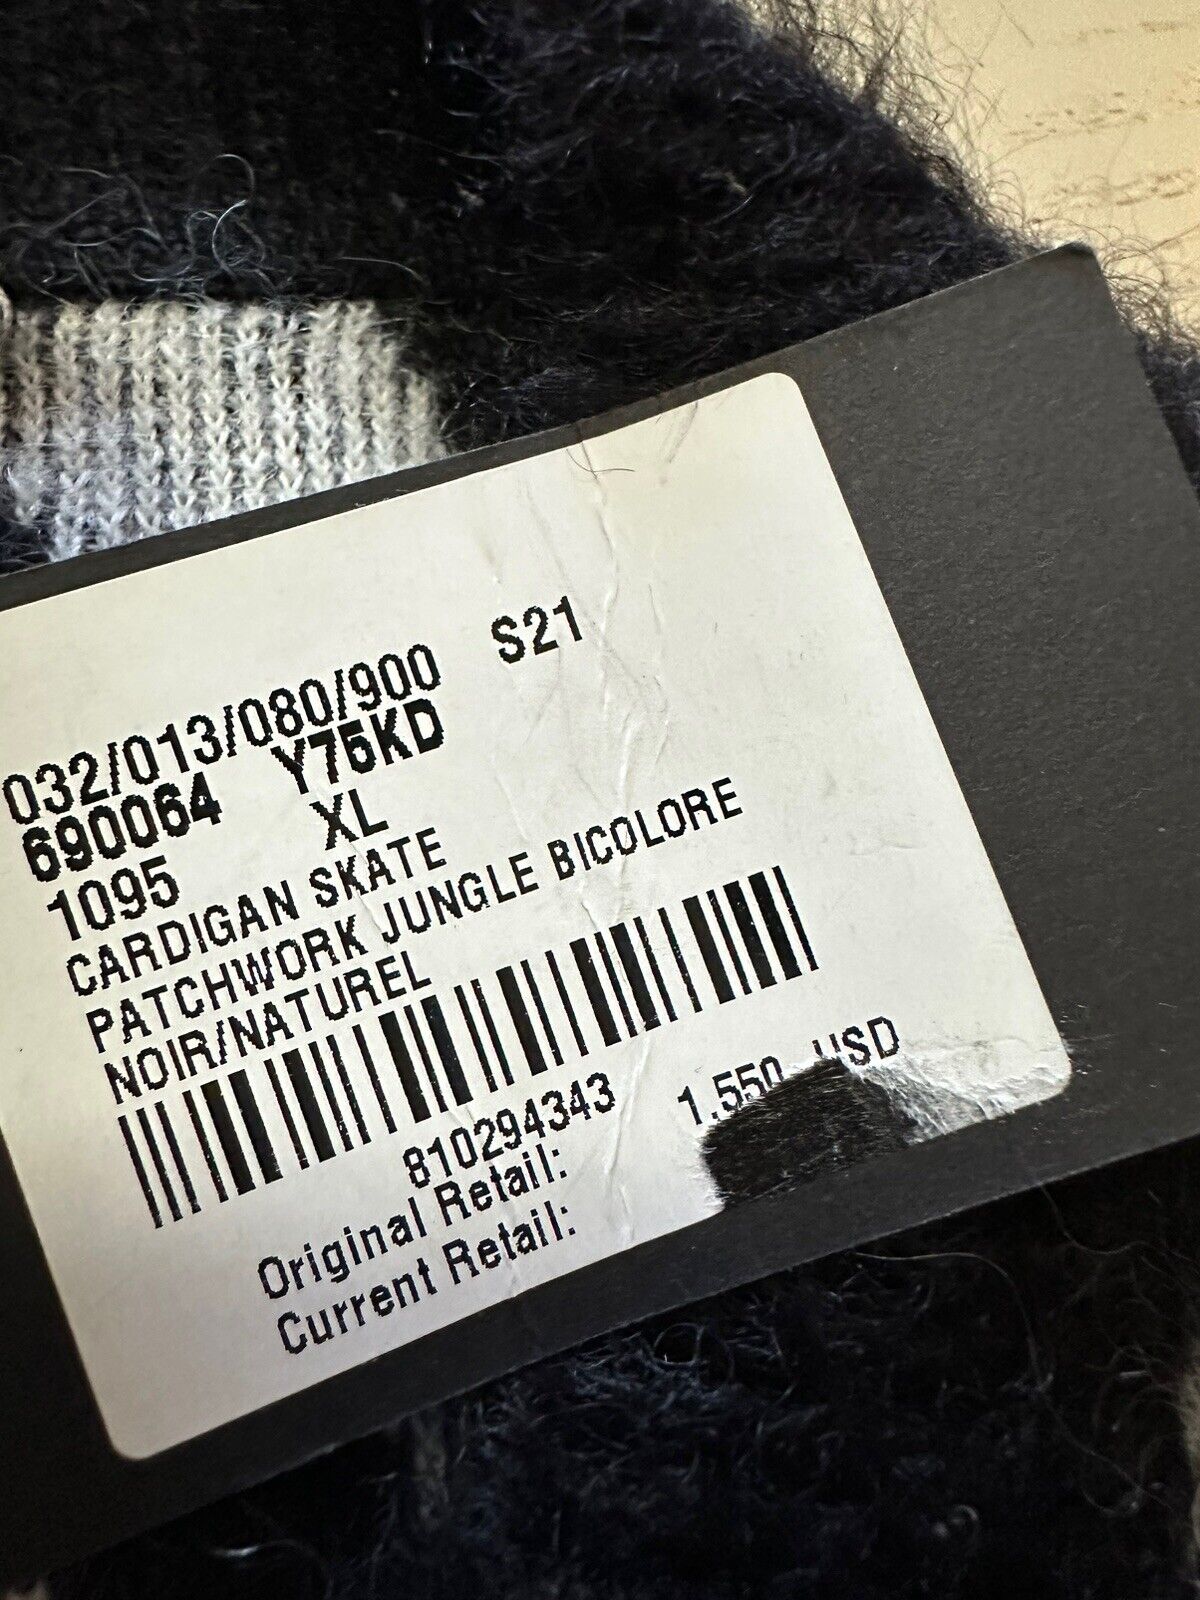 NWT $1550 Мужской кардиган Saint Laurent, свитер для скейтбординга, черный/натуральный, размер XL, Италия